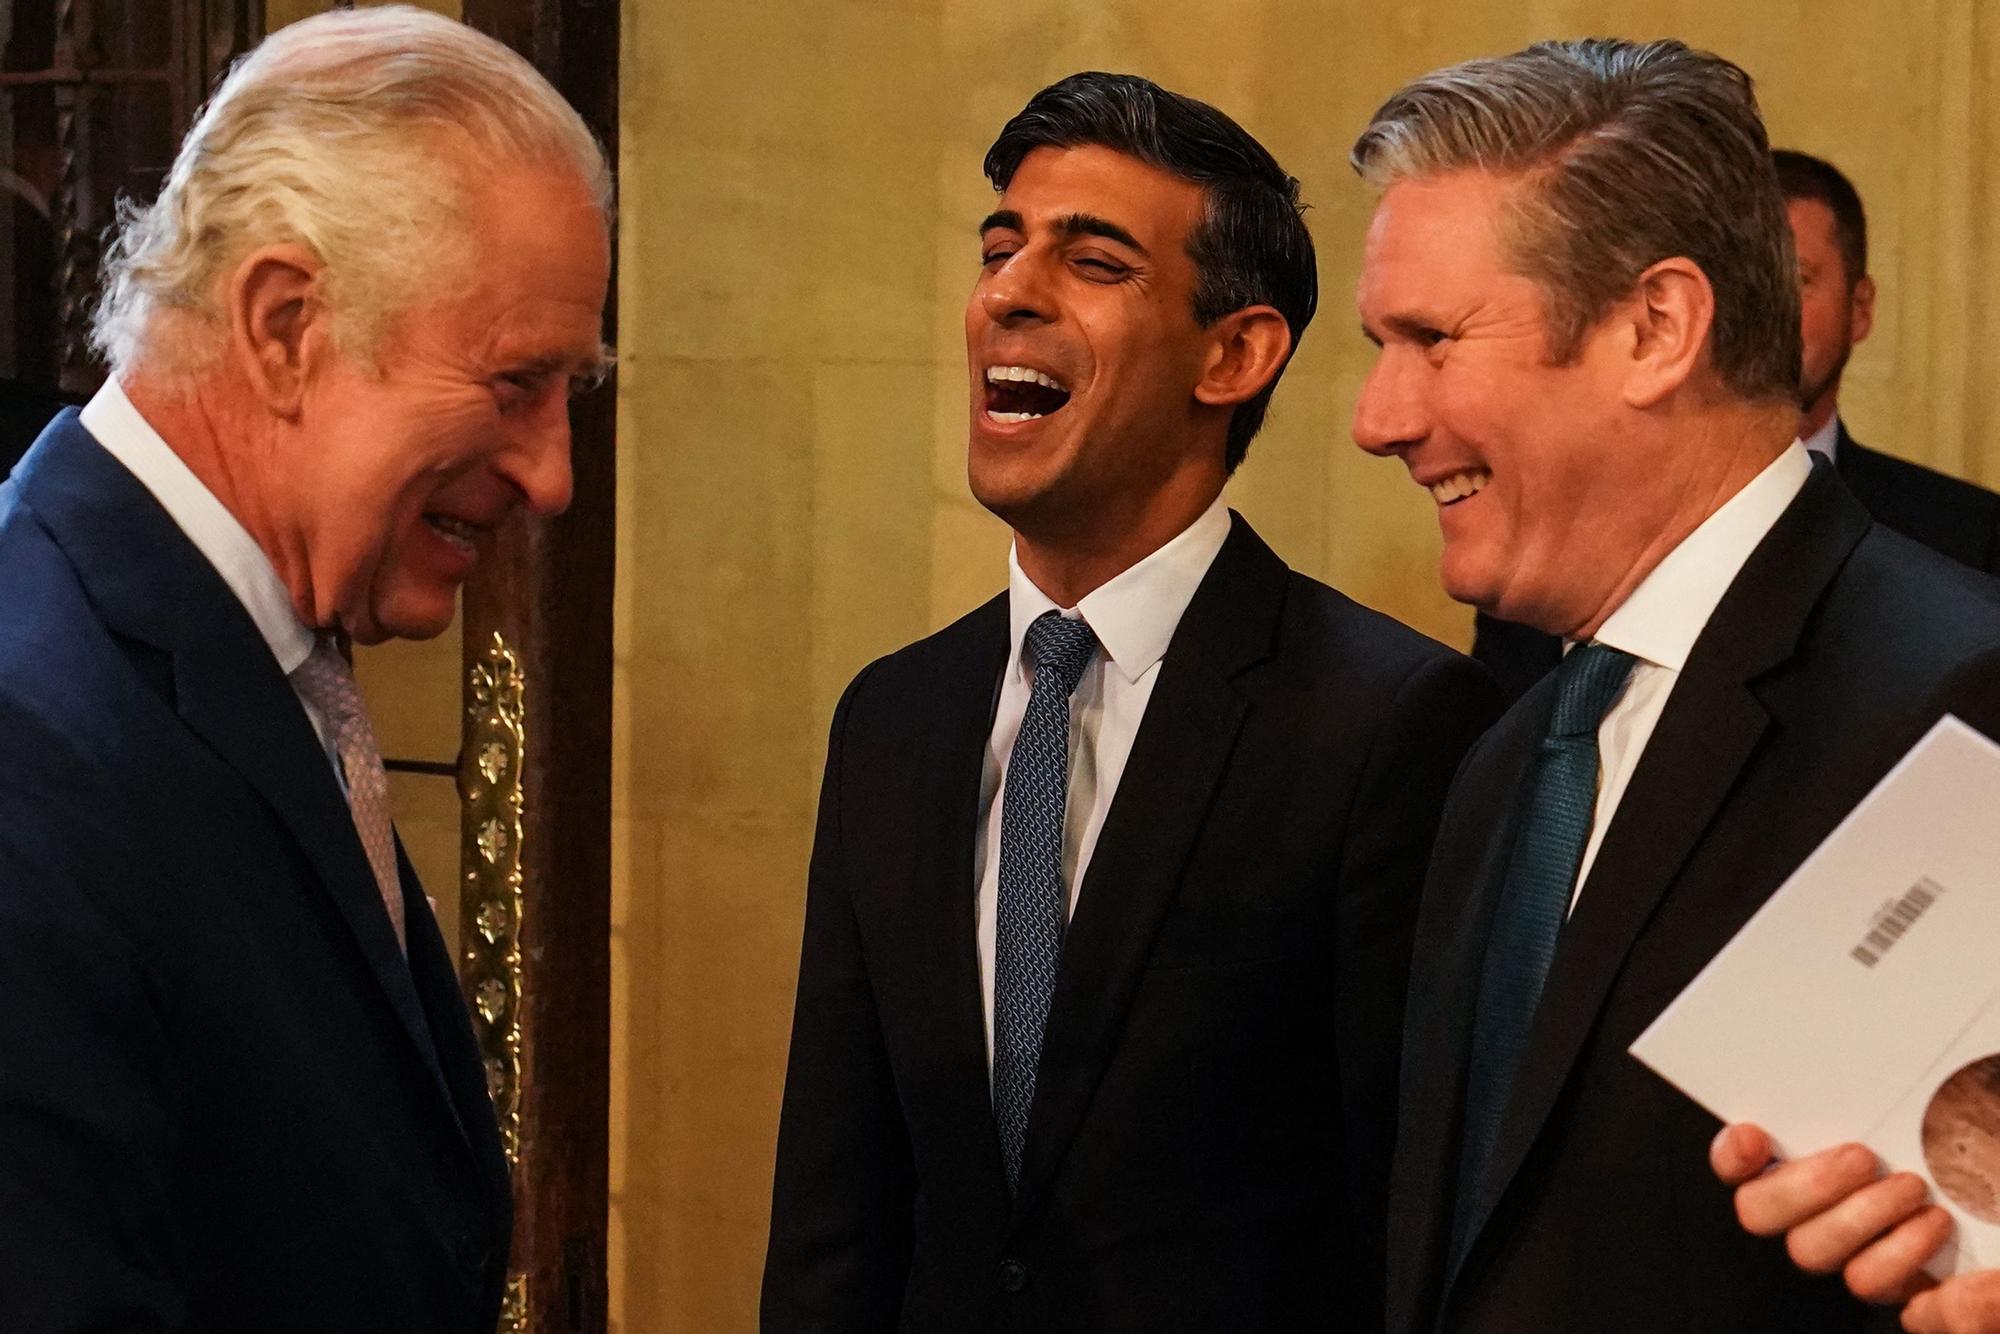 El rey Carlos conversa con el primer ministro, Rishi Sunak, y el líder laborista, Keir Starmer, durante la visita del monarca al Parlamento británico, este martes.